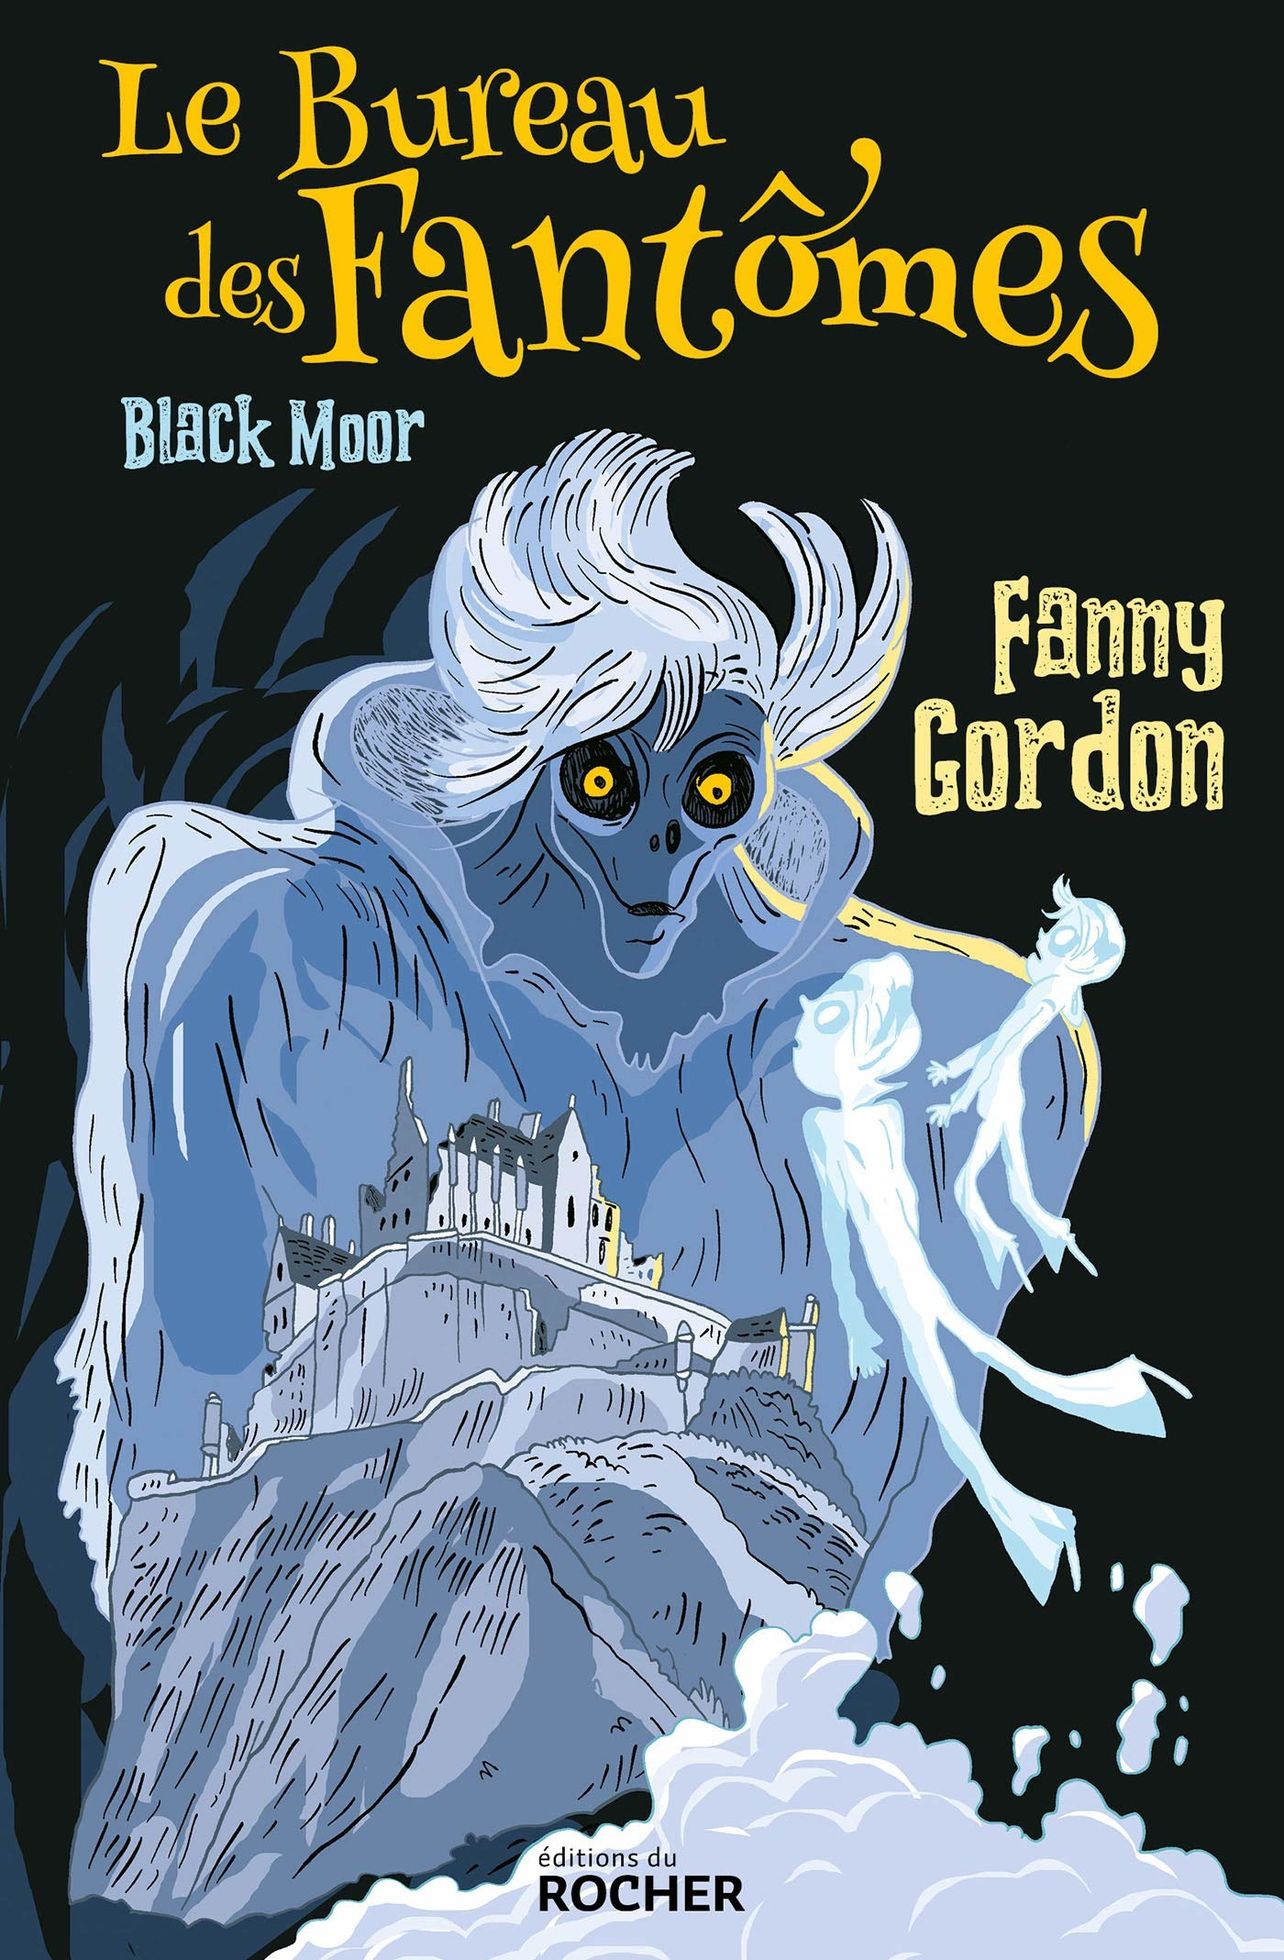 Le Bureau des Fantômes t.1 Black Moor de Fanny Gordon